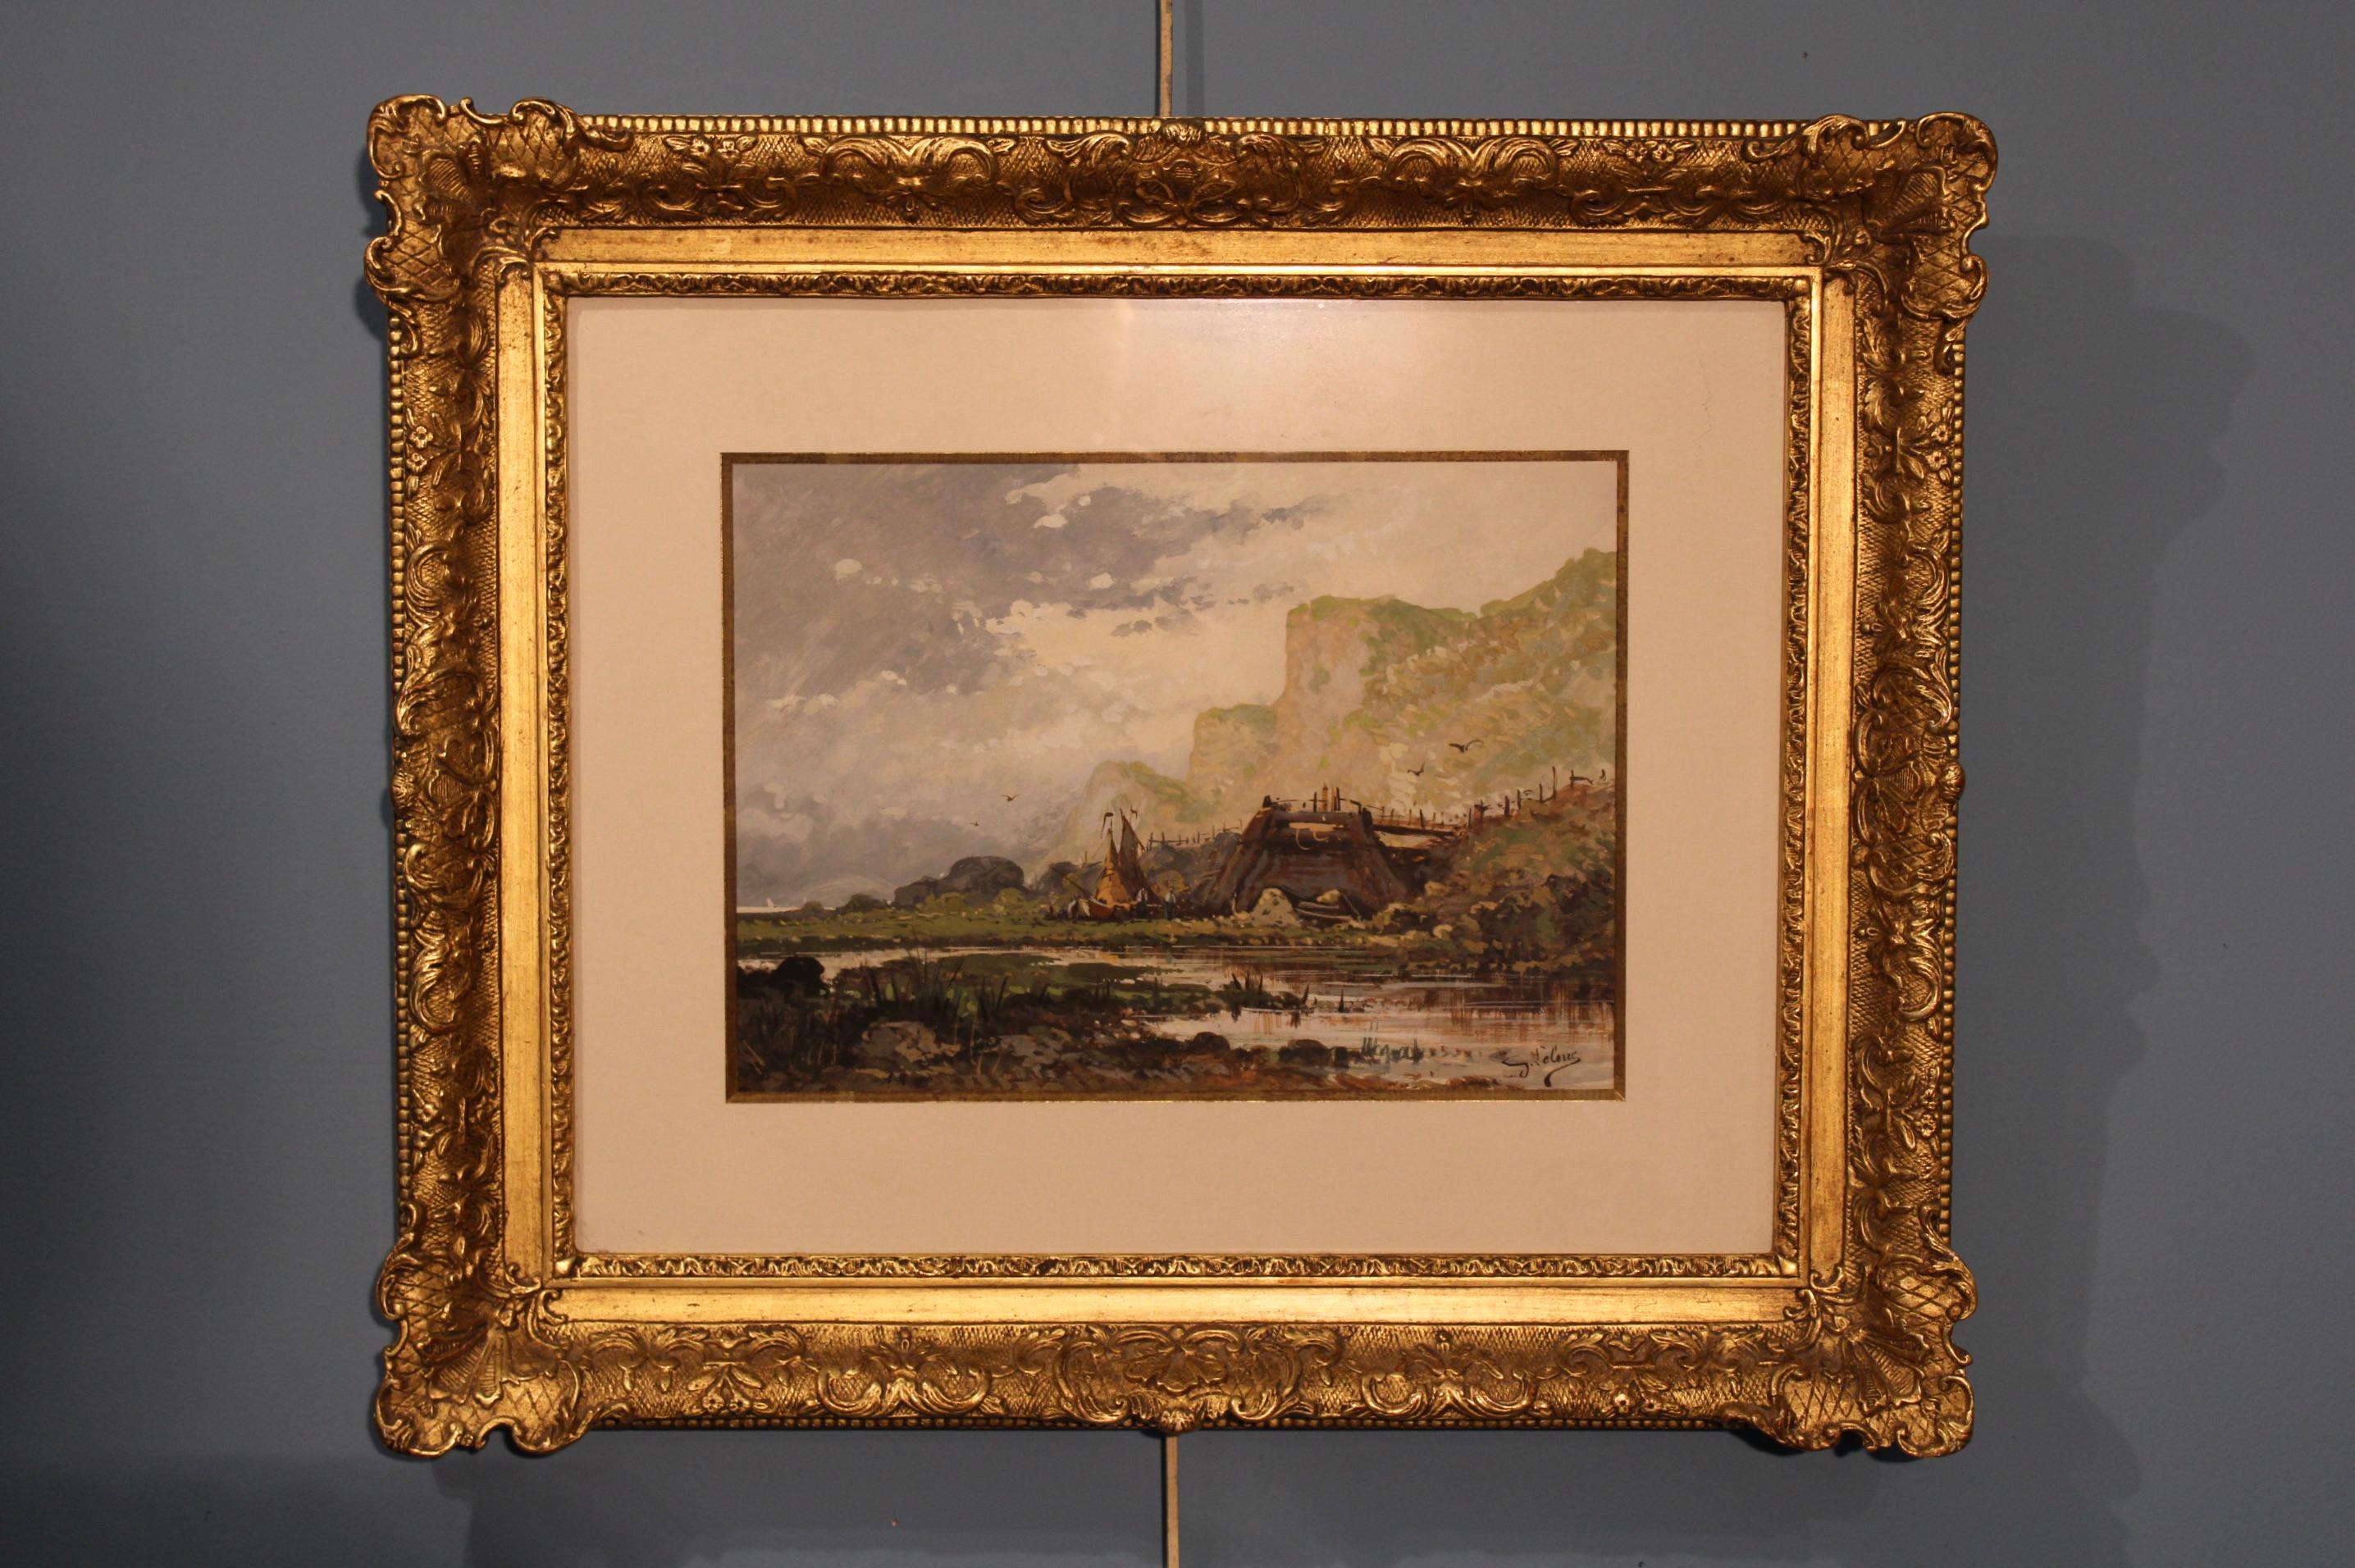 Gemälde von Eugène Galien-Laloue (1854-1941), französischer Landschaftsmaler. 
Gouache-Gemälde signiert unten rechts. 
Abmessungen bei Sicht : 30 x 21 cm.